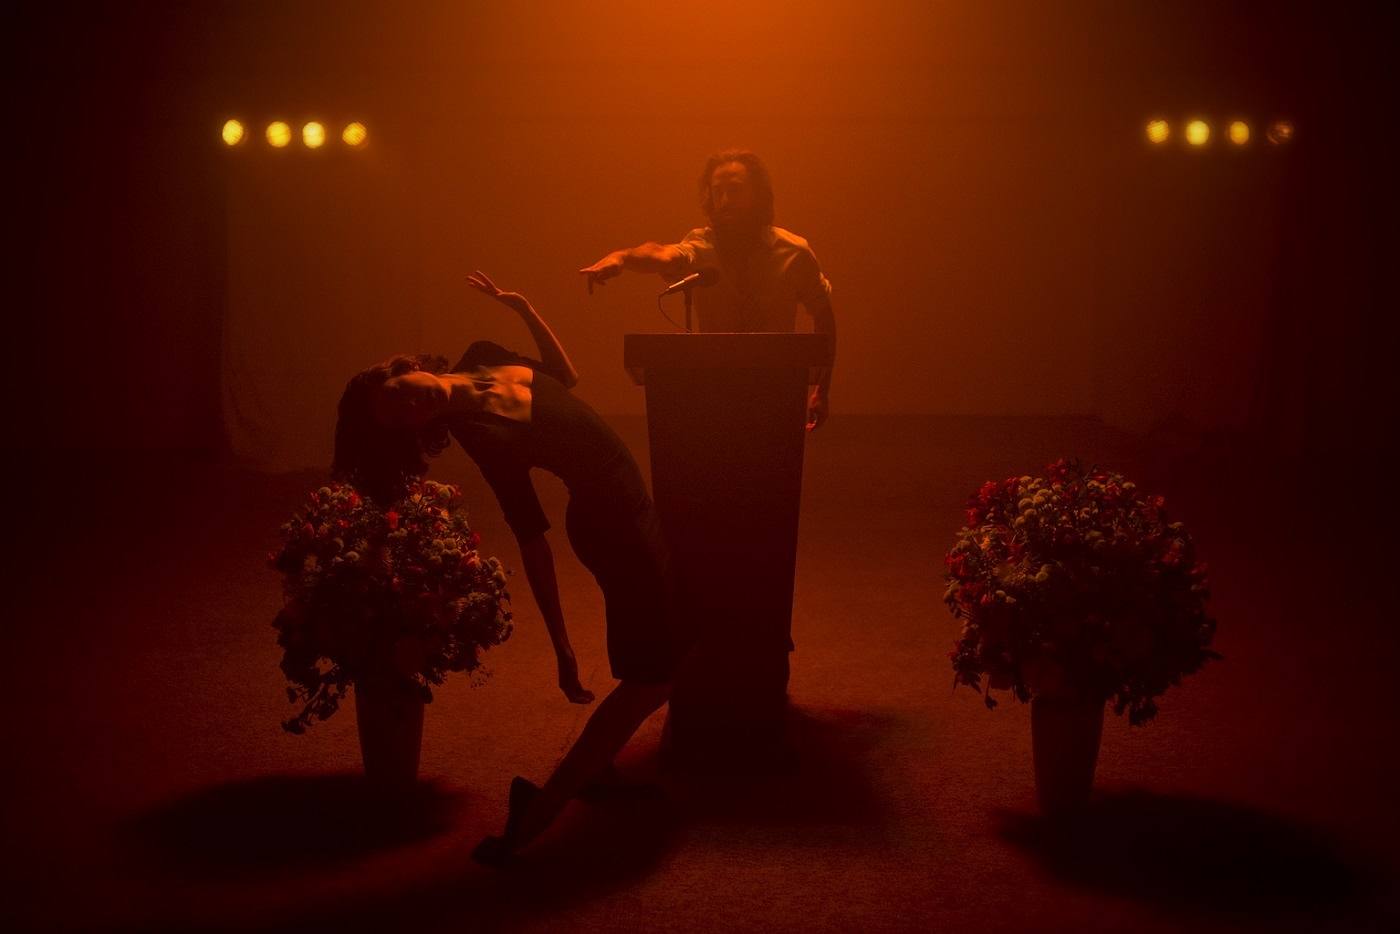 Baile catárquico y ecos de Suicide, el nuevo videoclip de Titán